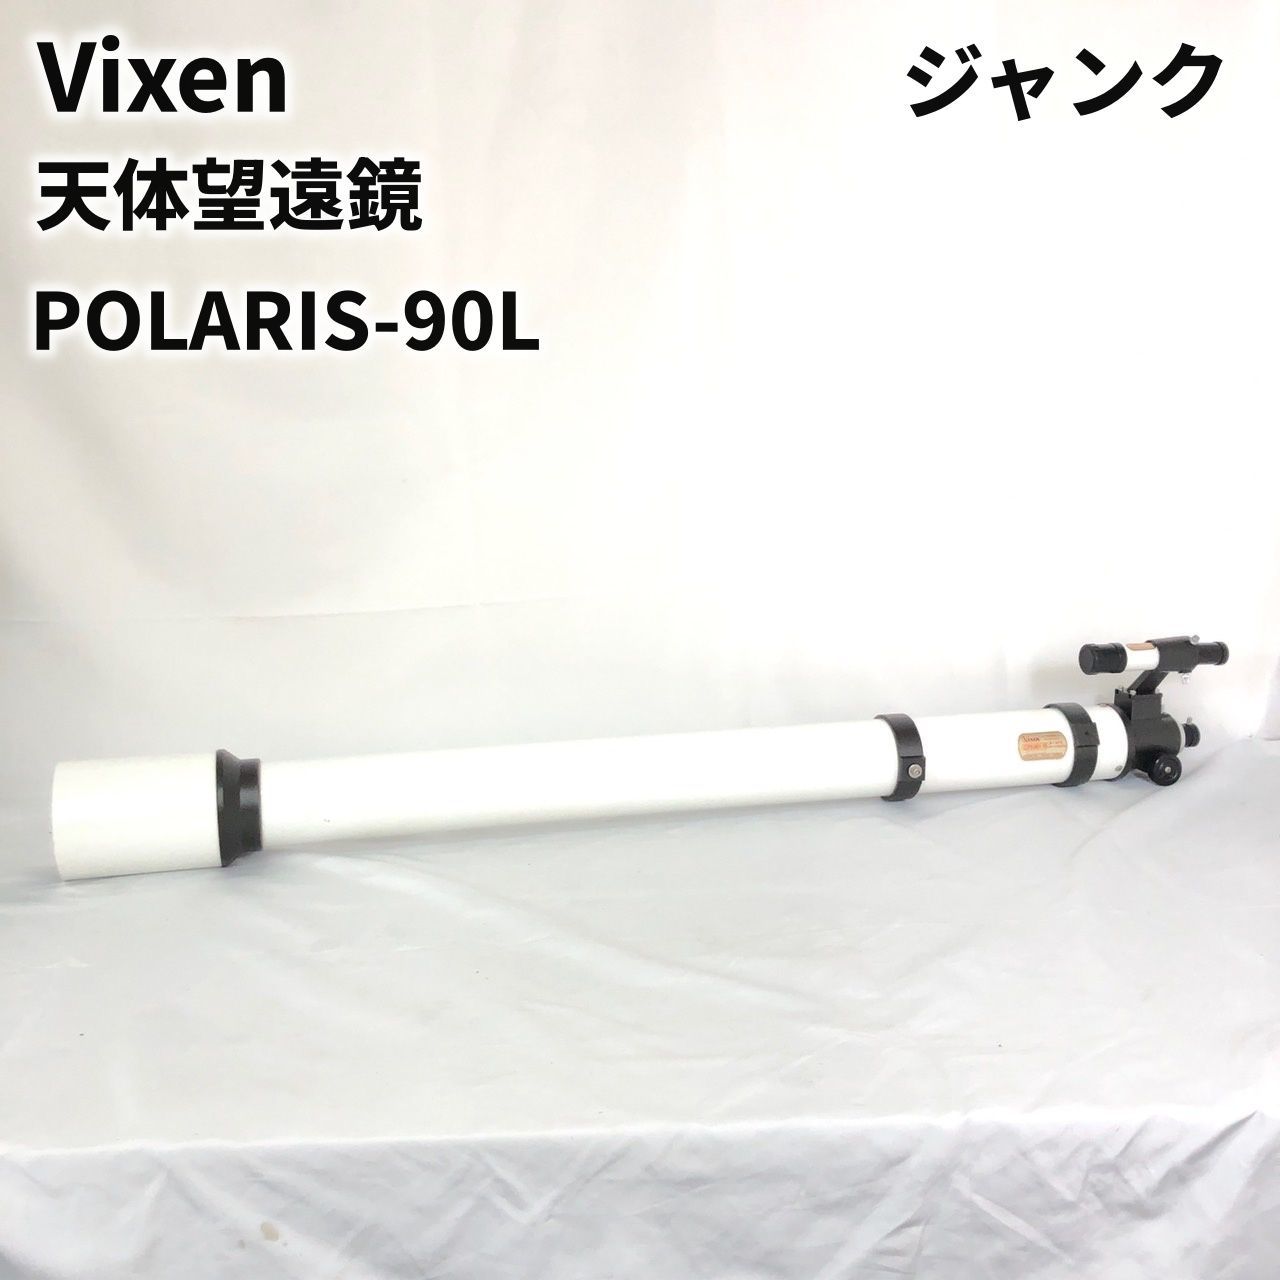 ジャンク Vixen ビクセン 天体望遠鏡 POLARIS-90L 現状品 レトロ 年代物 らくらくメルカリ便以外で発送予定 【送料無料】  SIDA241306140 - メルカリ